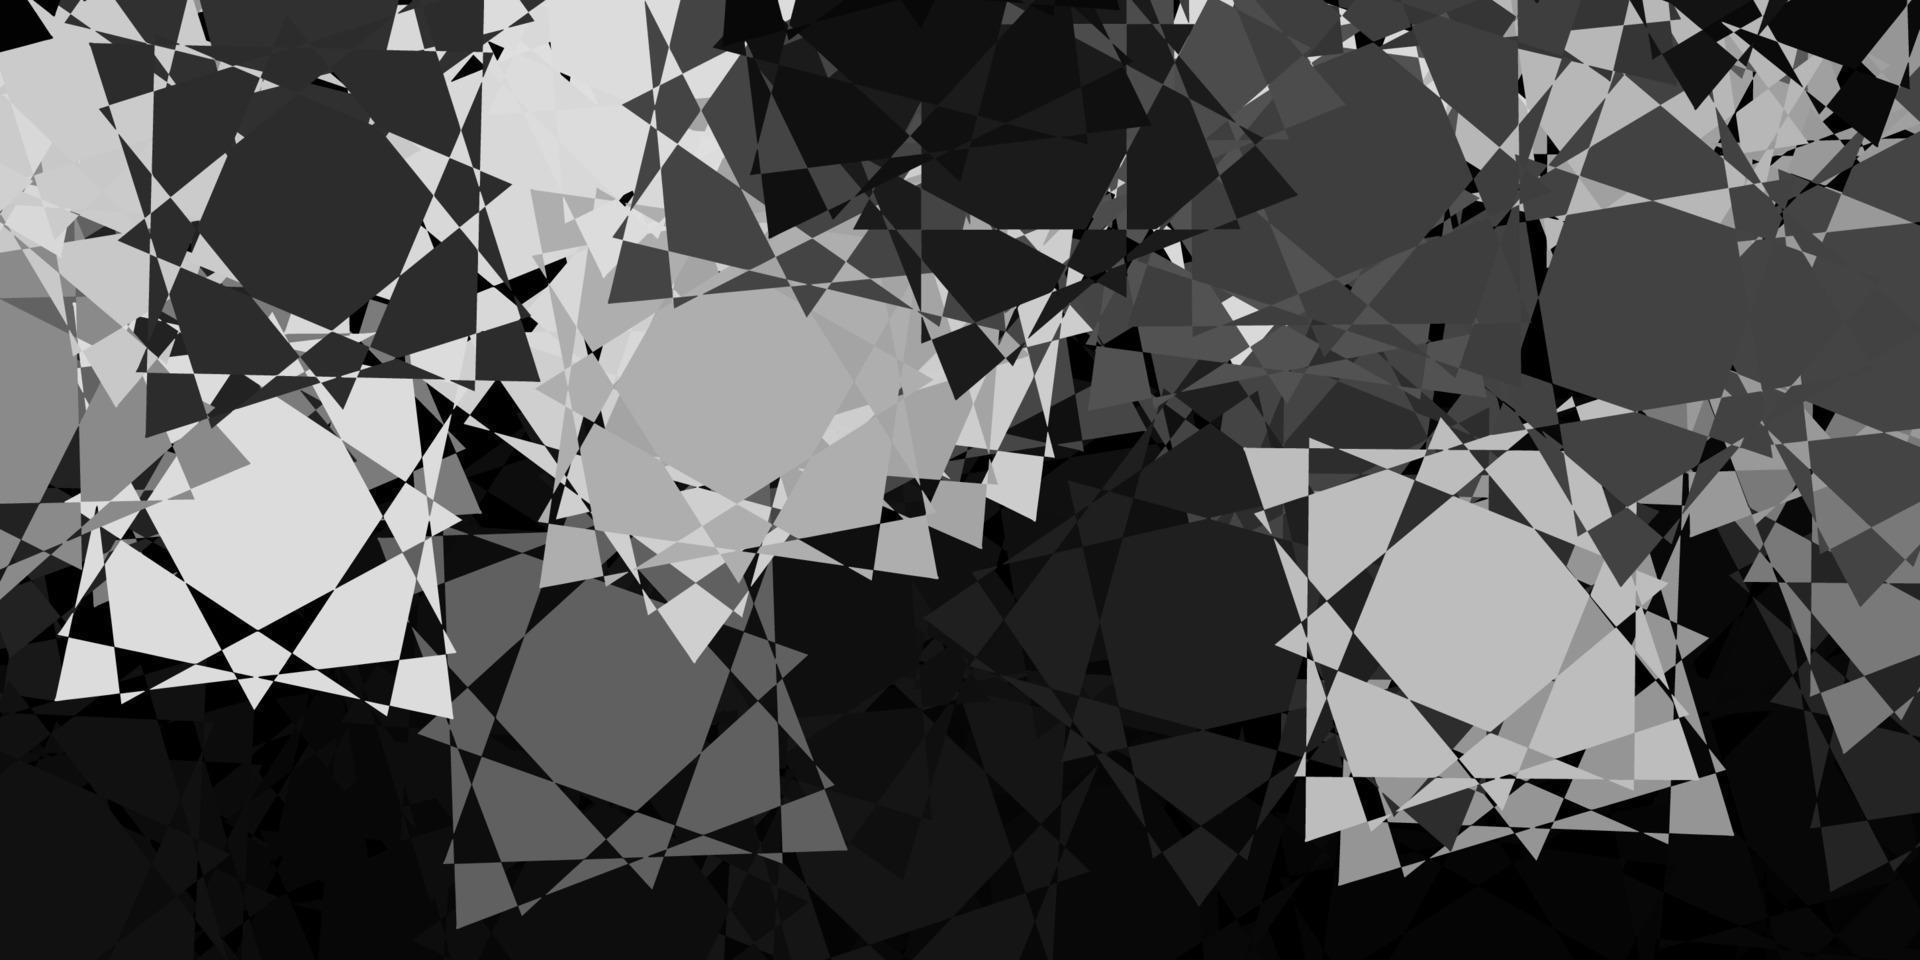 padrão de vetor cinza escuro com formas poligonais.